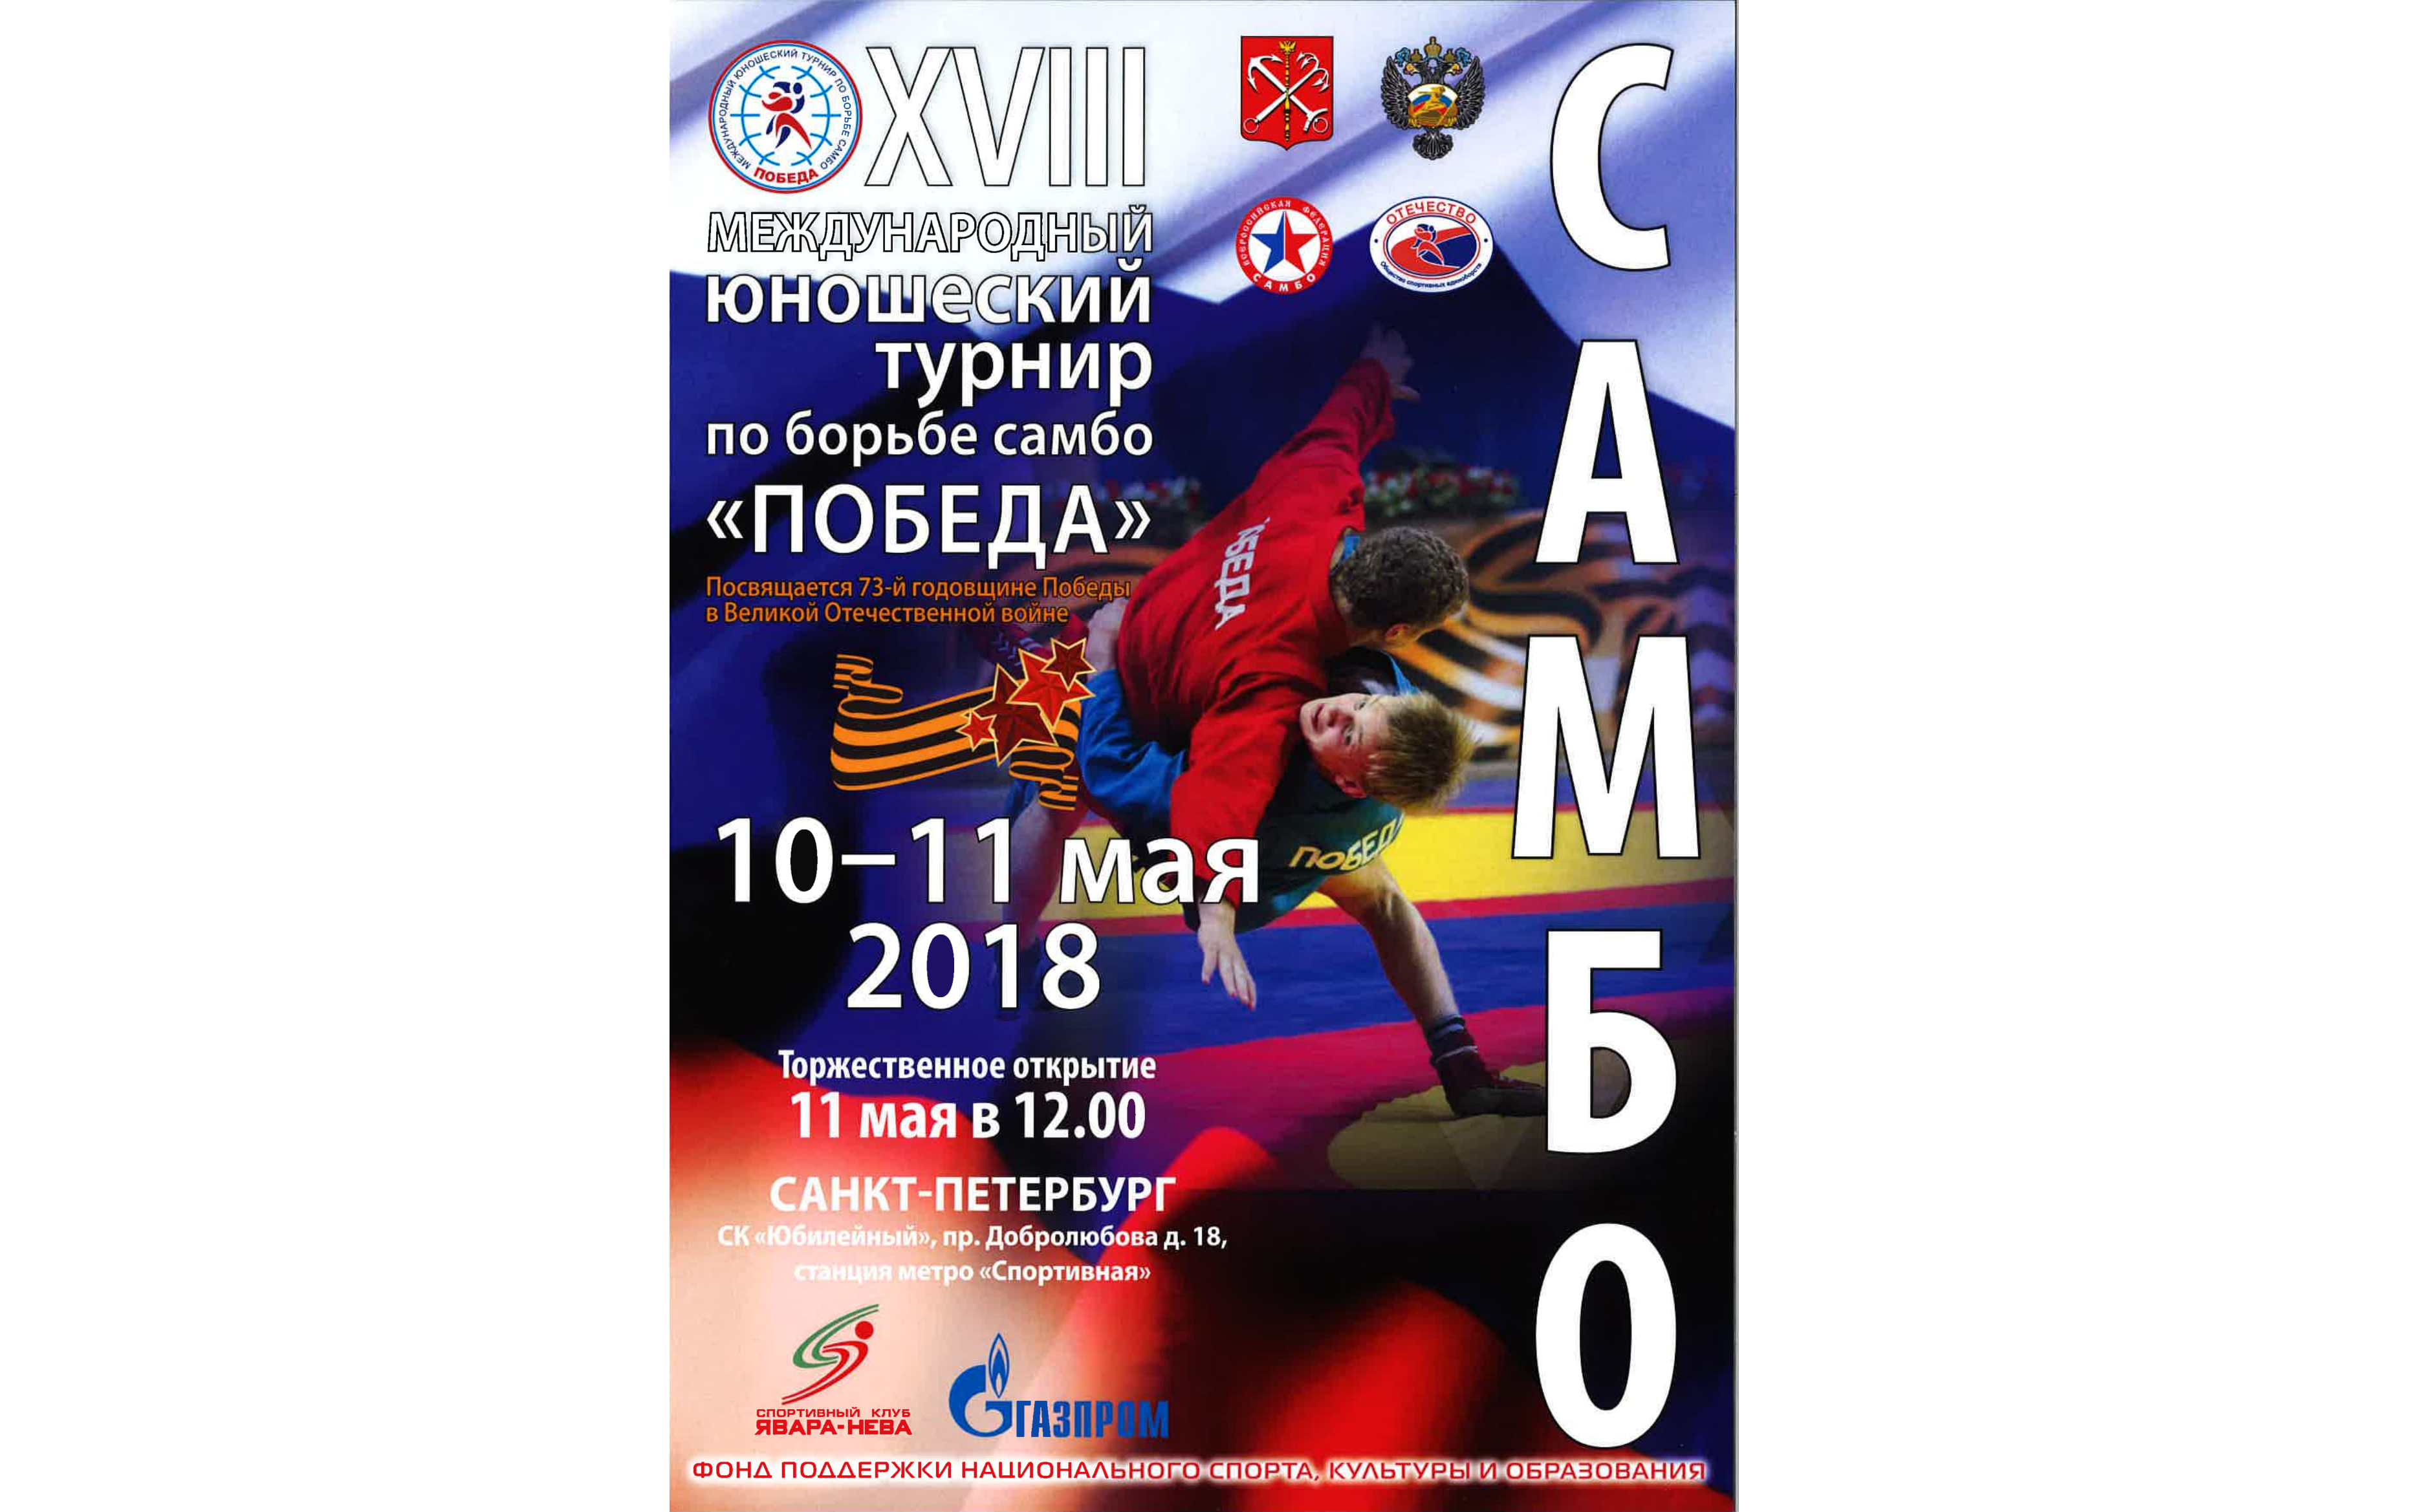 XVIII Международный юношеский командный турнир по борьбе самбо «Победа»